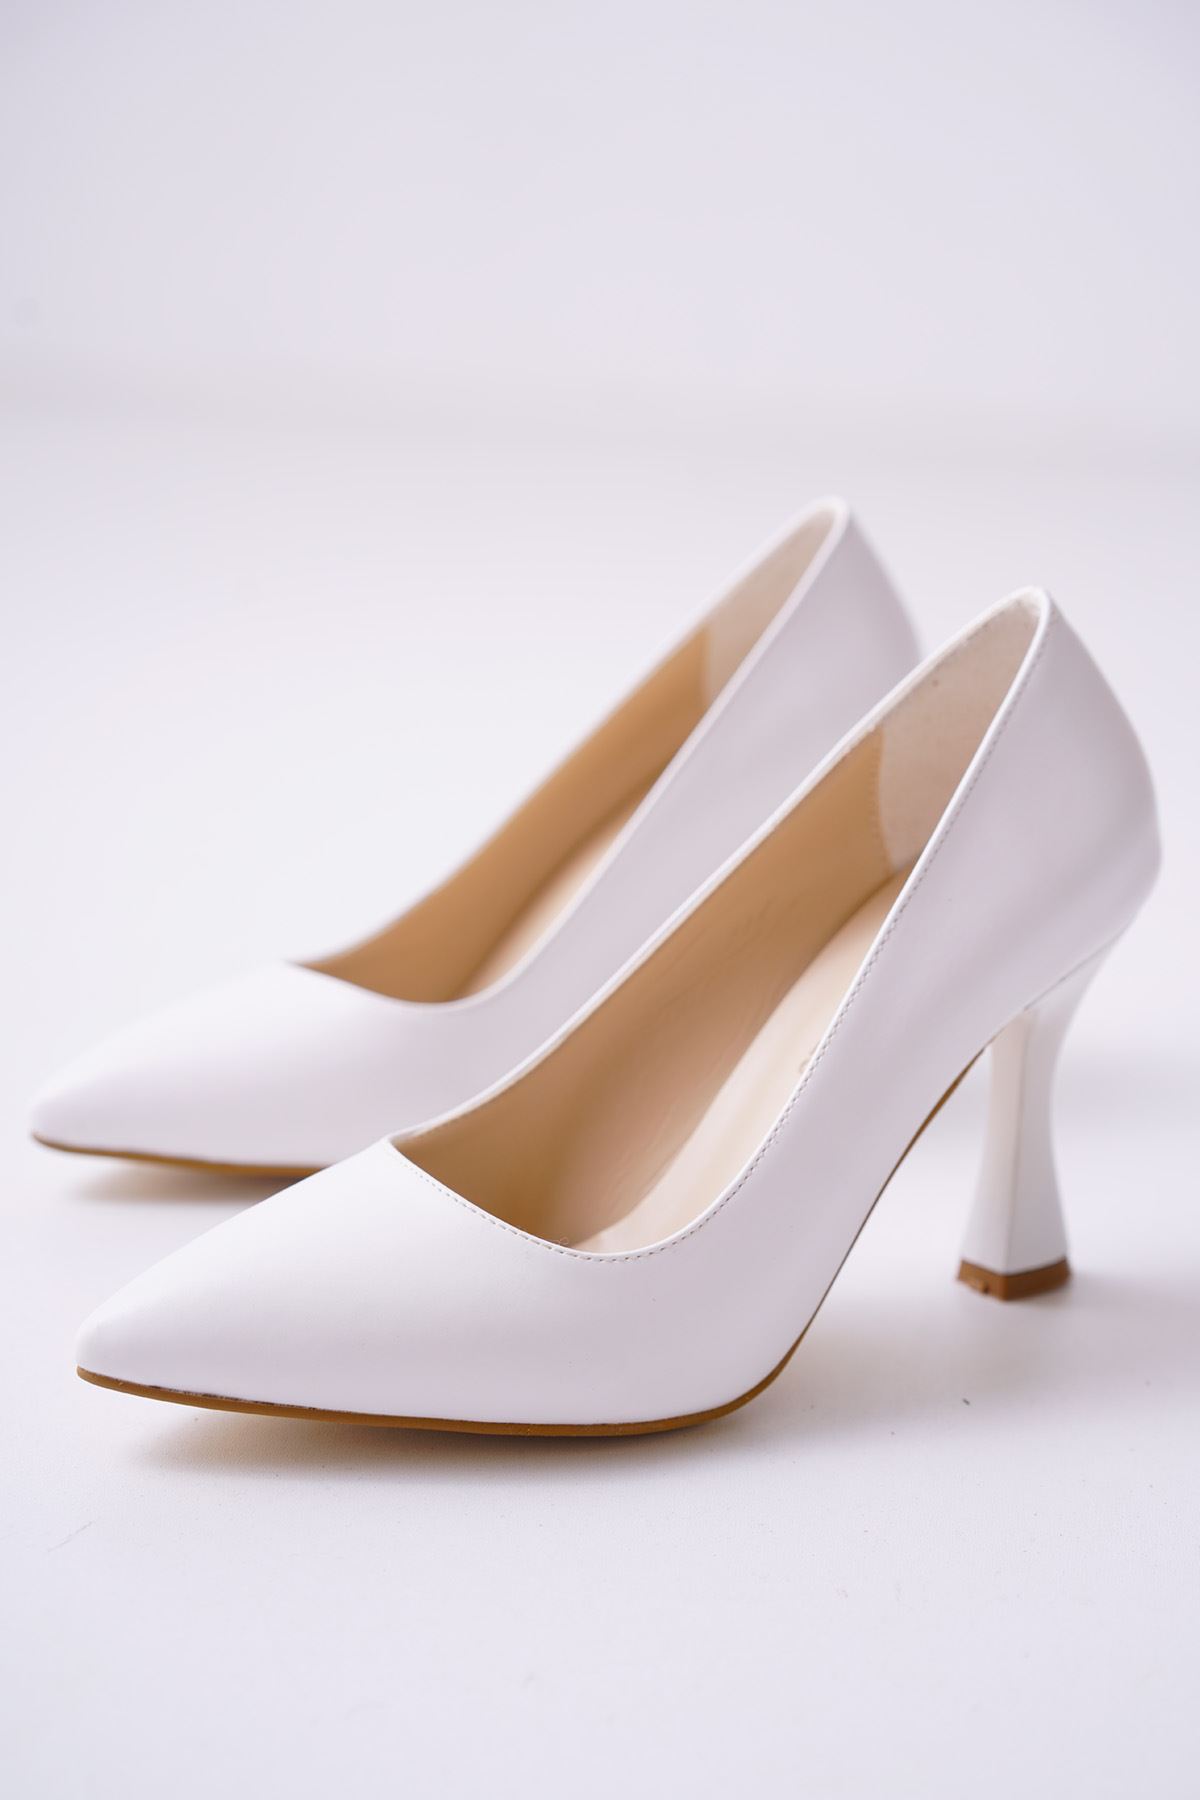 Letha Beyaz Mat Deri Kadın Topuklu Ayakkabı